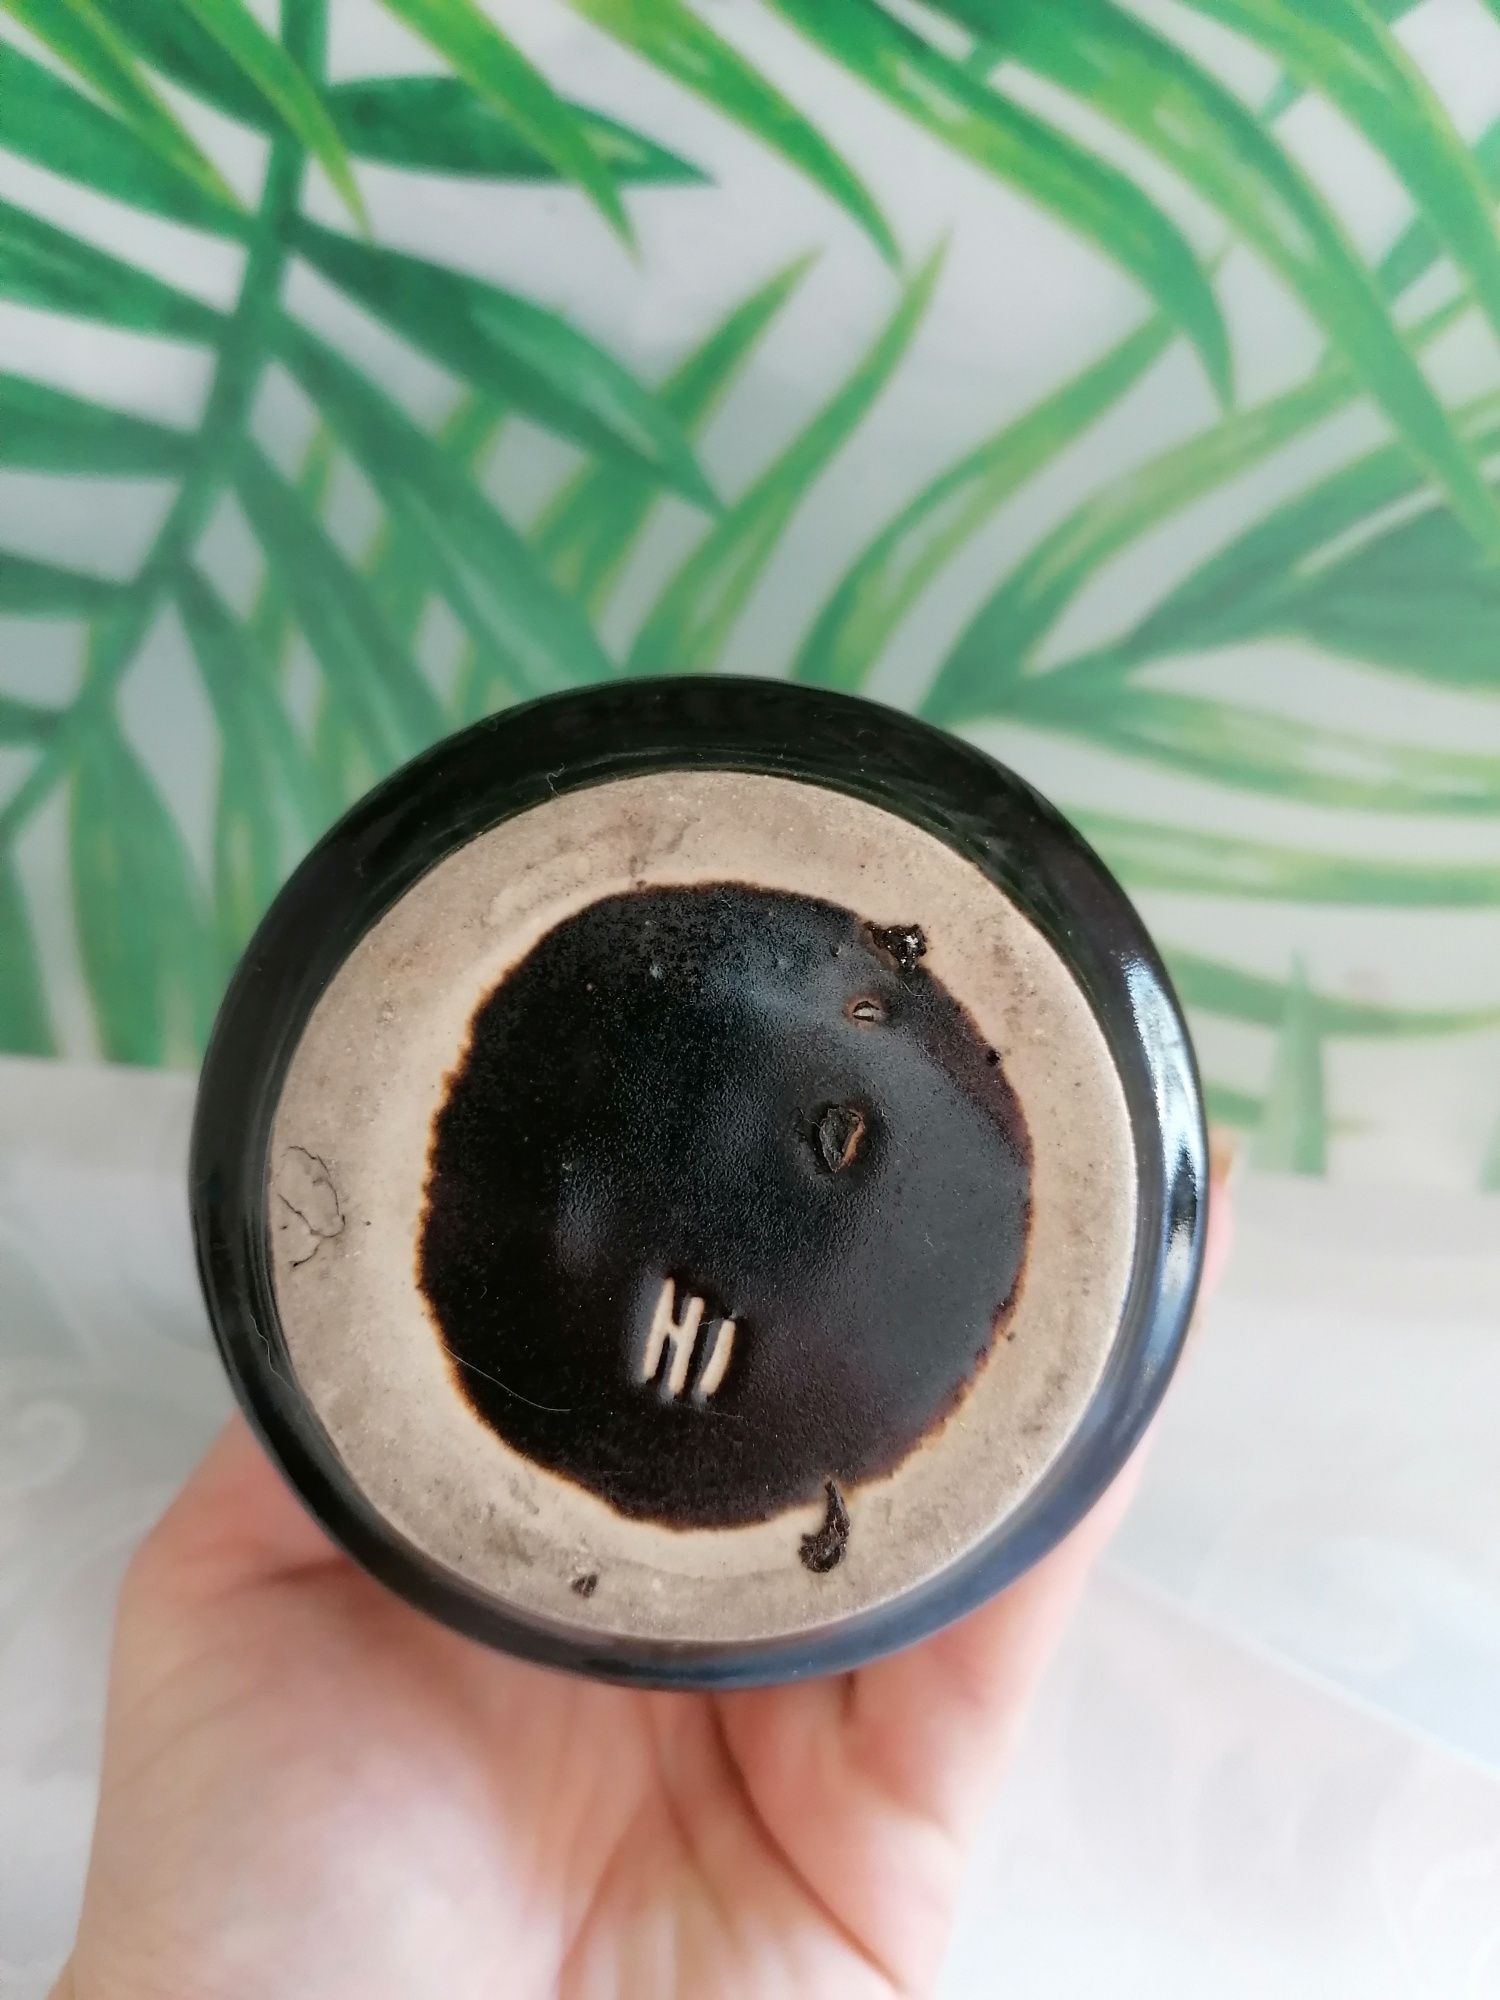 Ładny ciekawy ceramiczny wazon polecam